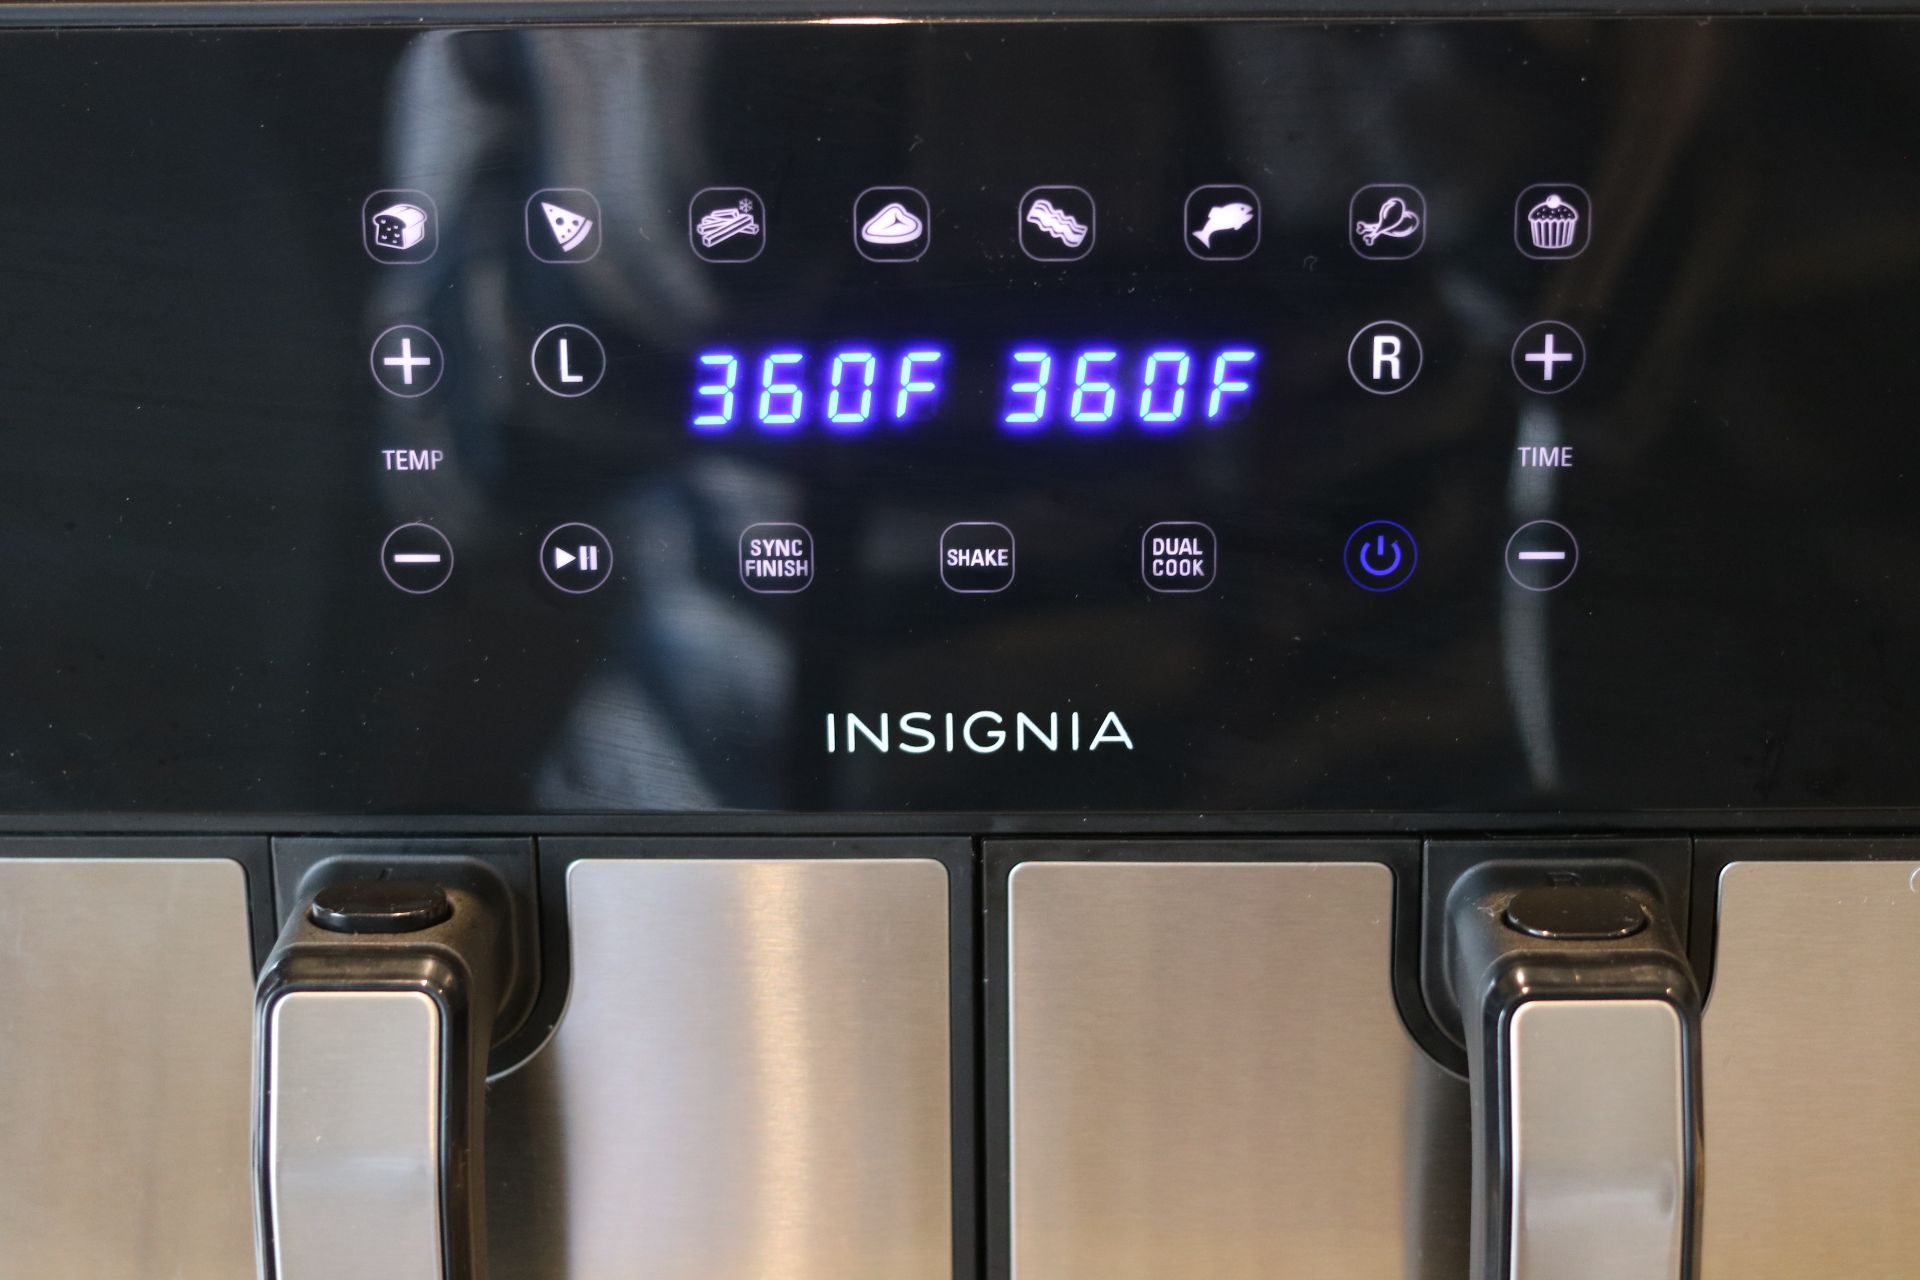 Panneau de la friteuse à air chaud numérique d'Insignia